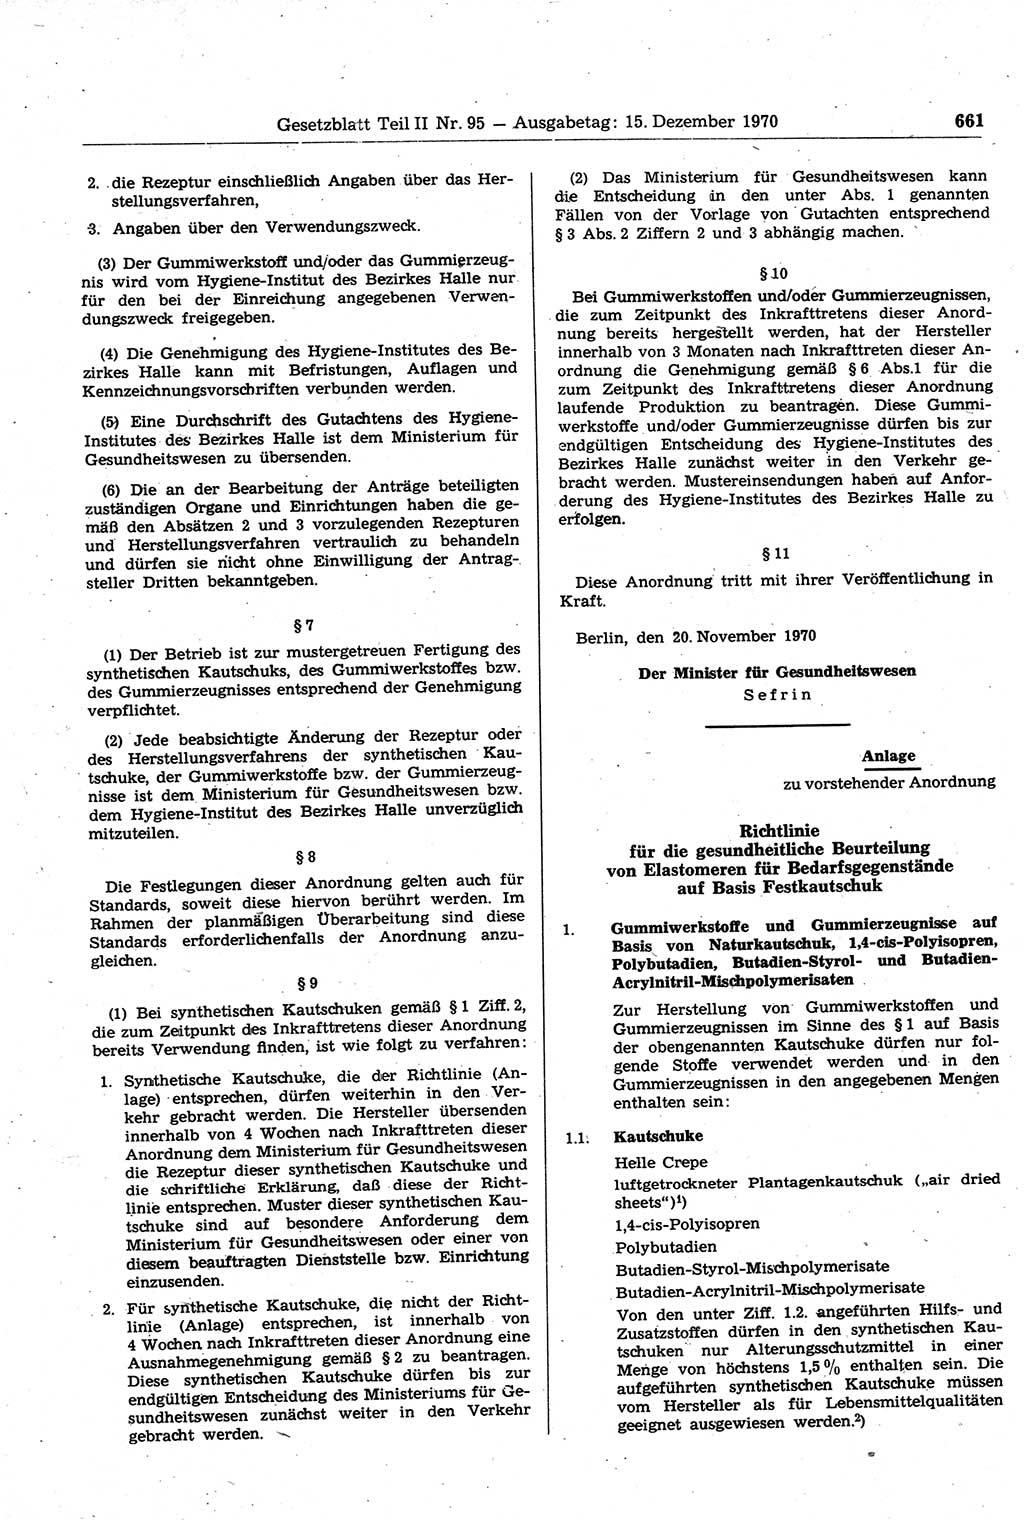 Gesetzblatt (GBl.) der Deutschen Demokratischen Republik (DDR) Teil ⅠⅠ 1970, Seite 661 (GBl. DDR ⅠⅠ 1970, S. 661)